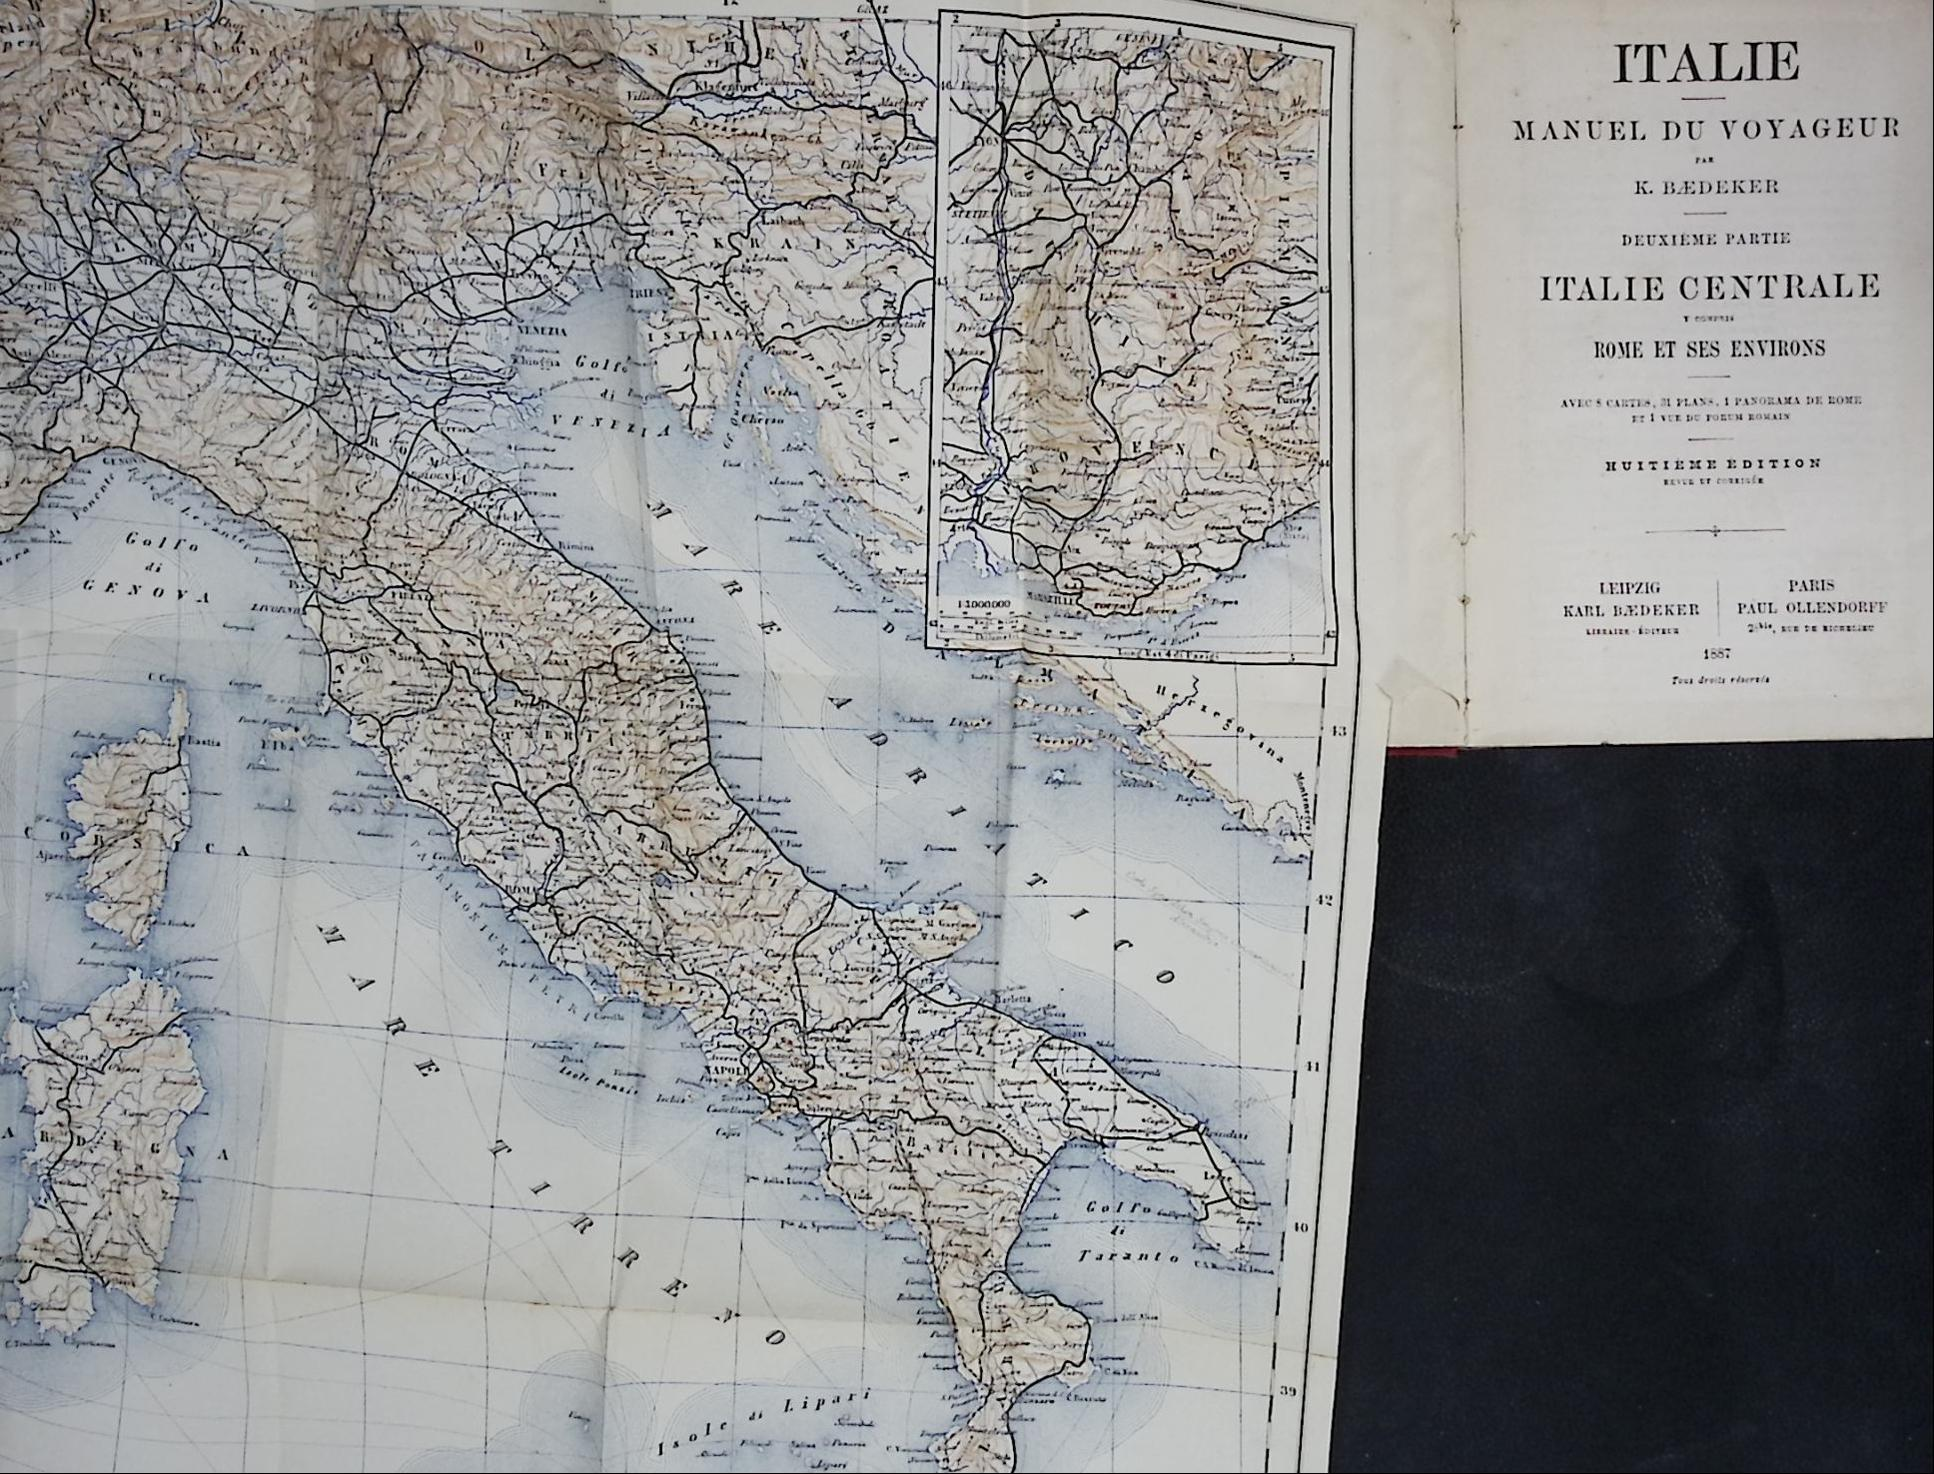 Italie Centrale. Rome. Manuel du Voyageur. Huitime dition. 1887.